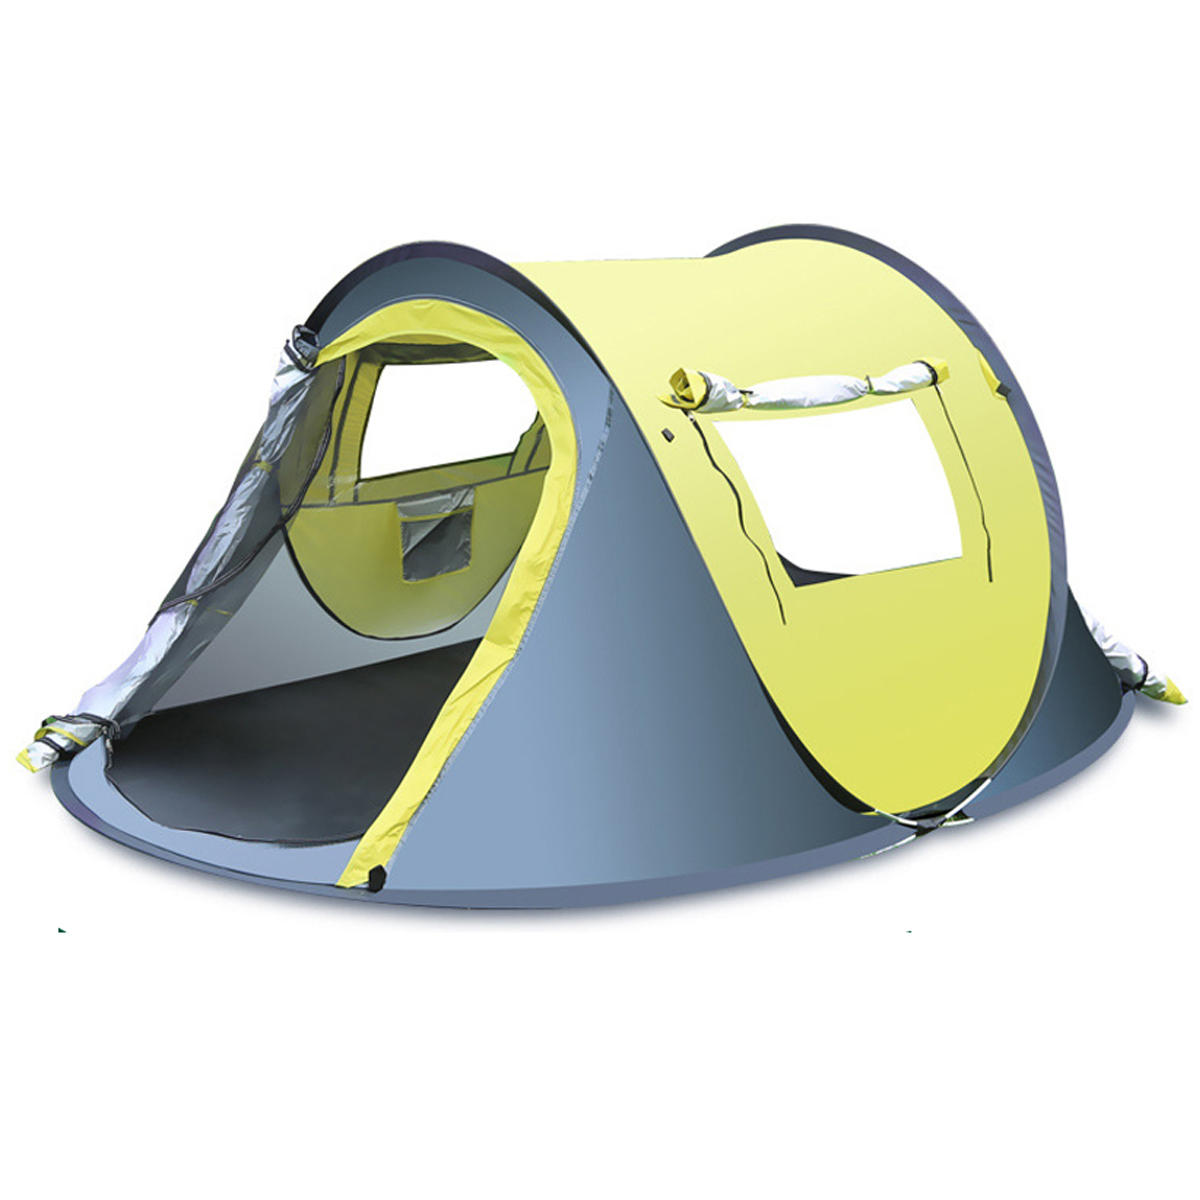 Schnell aufklappbares Zelt für 3-4 Personen im Freien, wasserdicht und regensicher, mit Sonnenschutzdach, ideal zum Camping und Wandern.